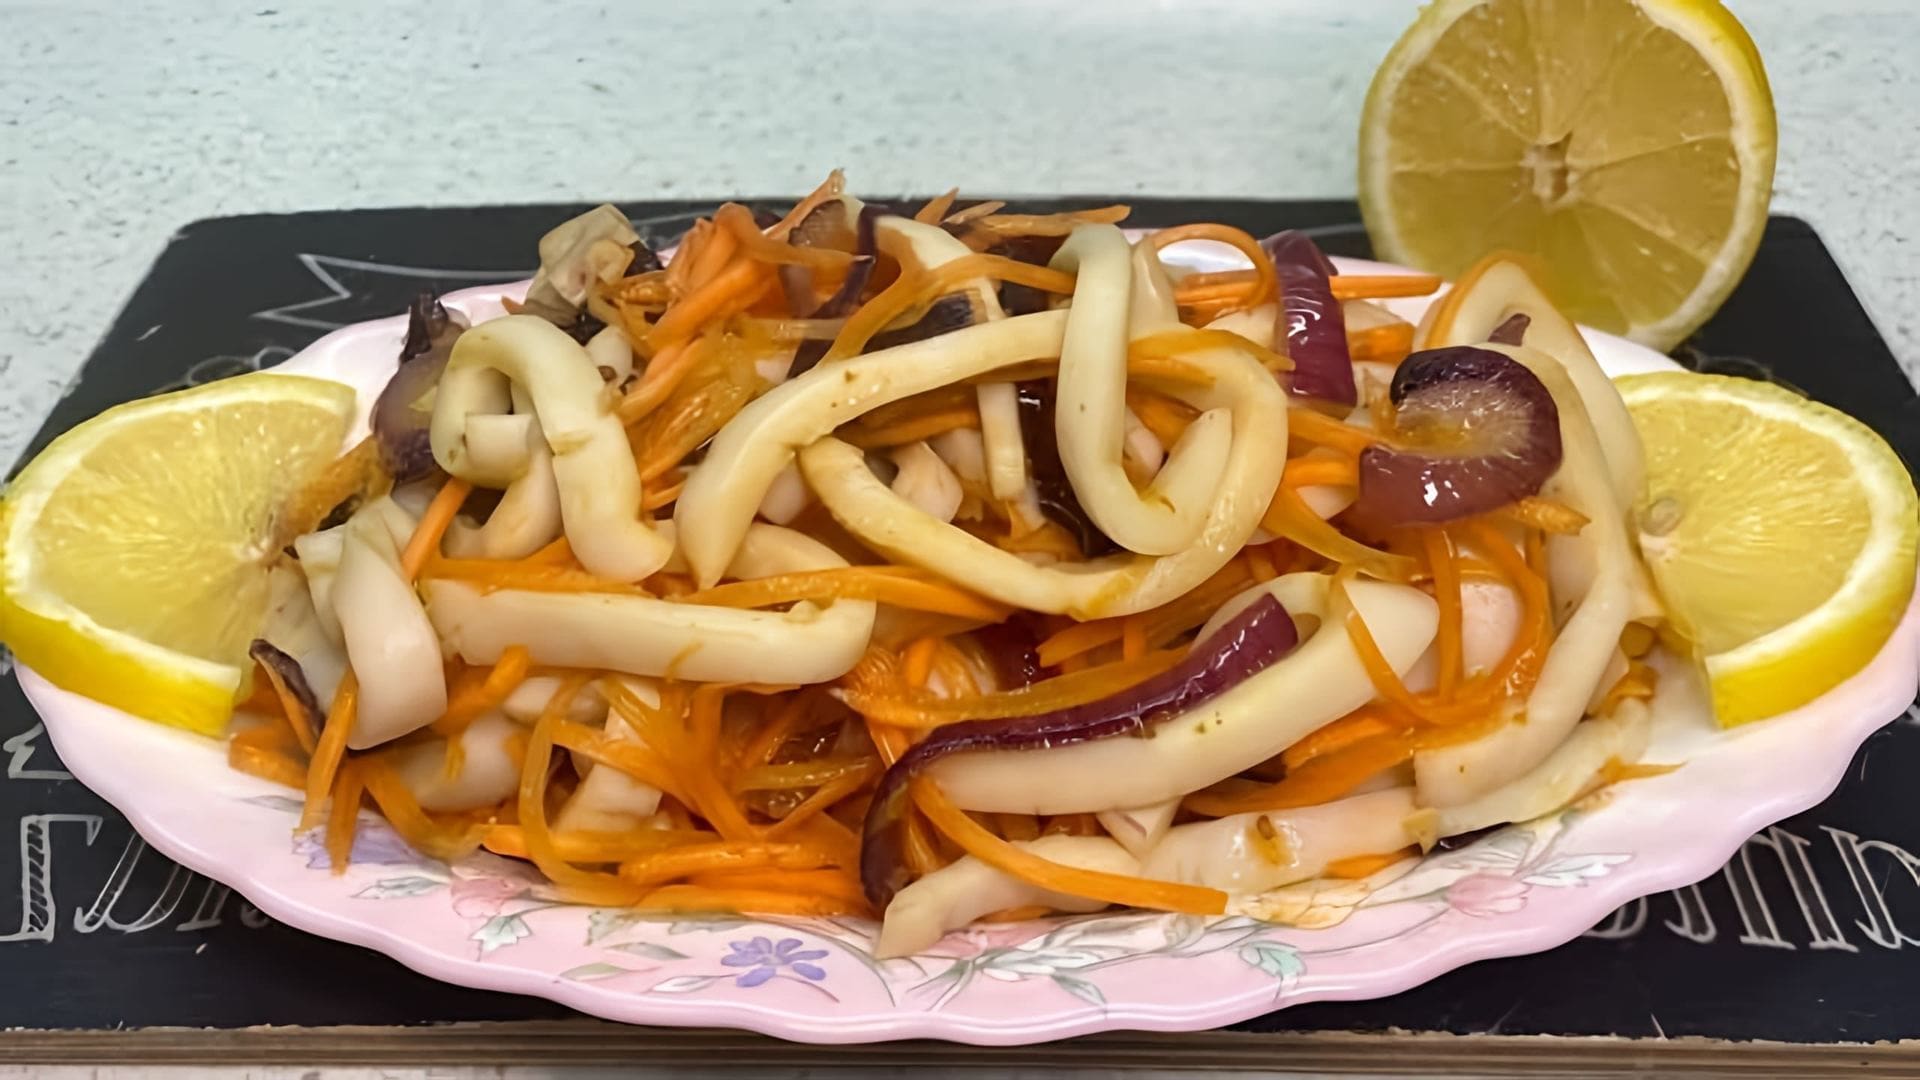 Салат из кальмаров с морковью и луком по-корейски - это улетная закуска, которая порадует своим вкусом и ароматом